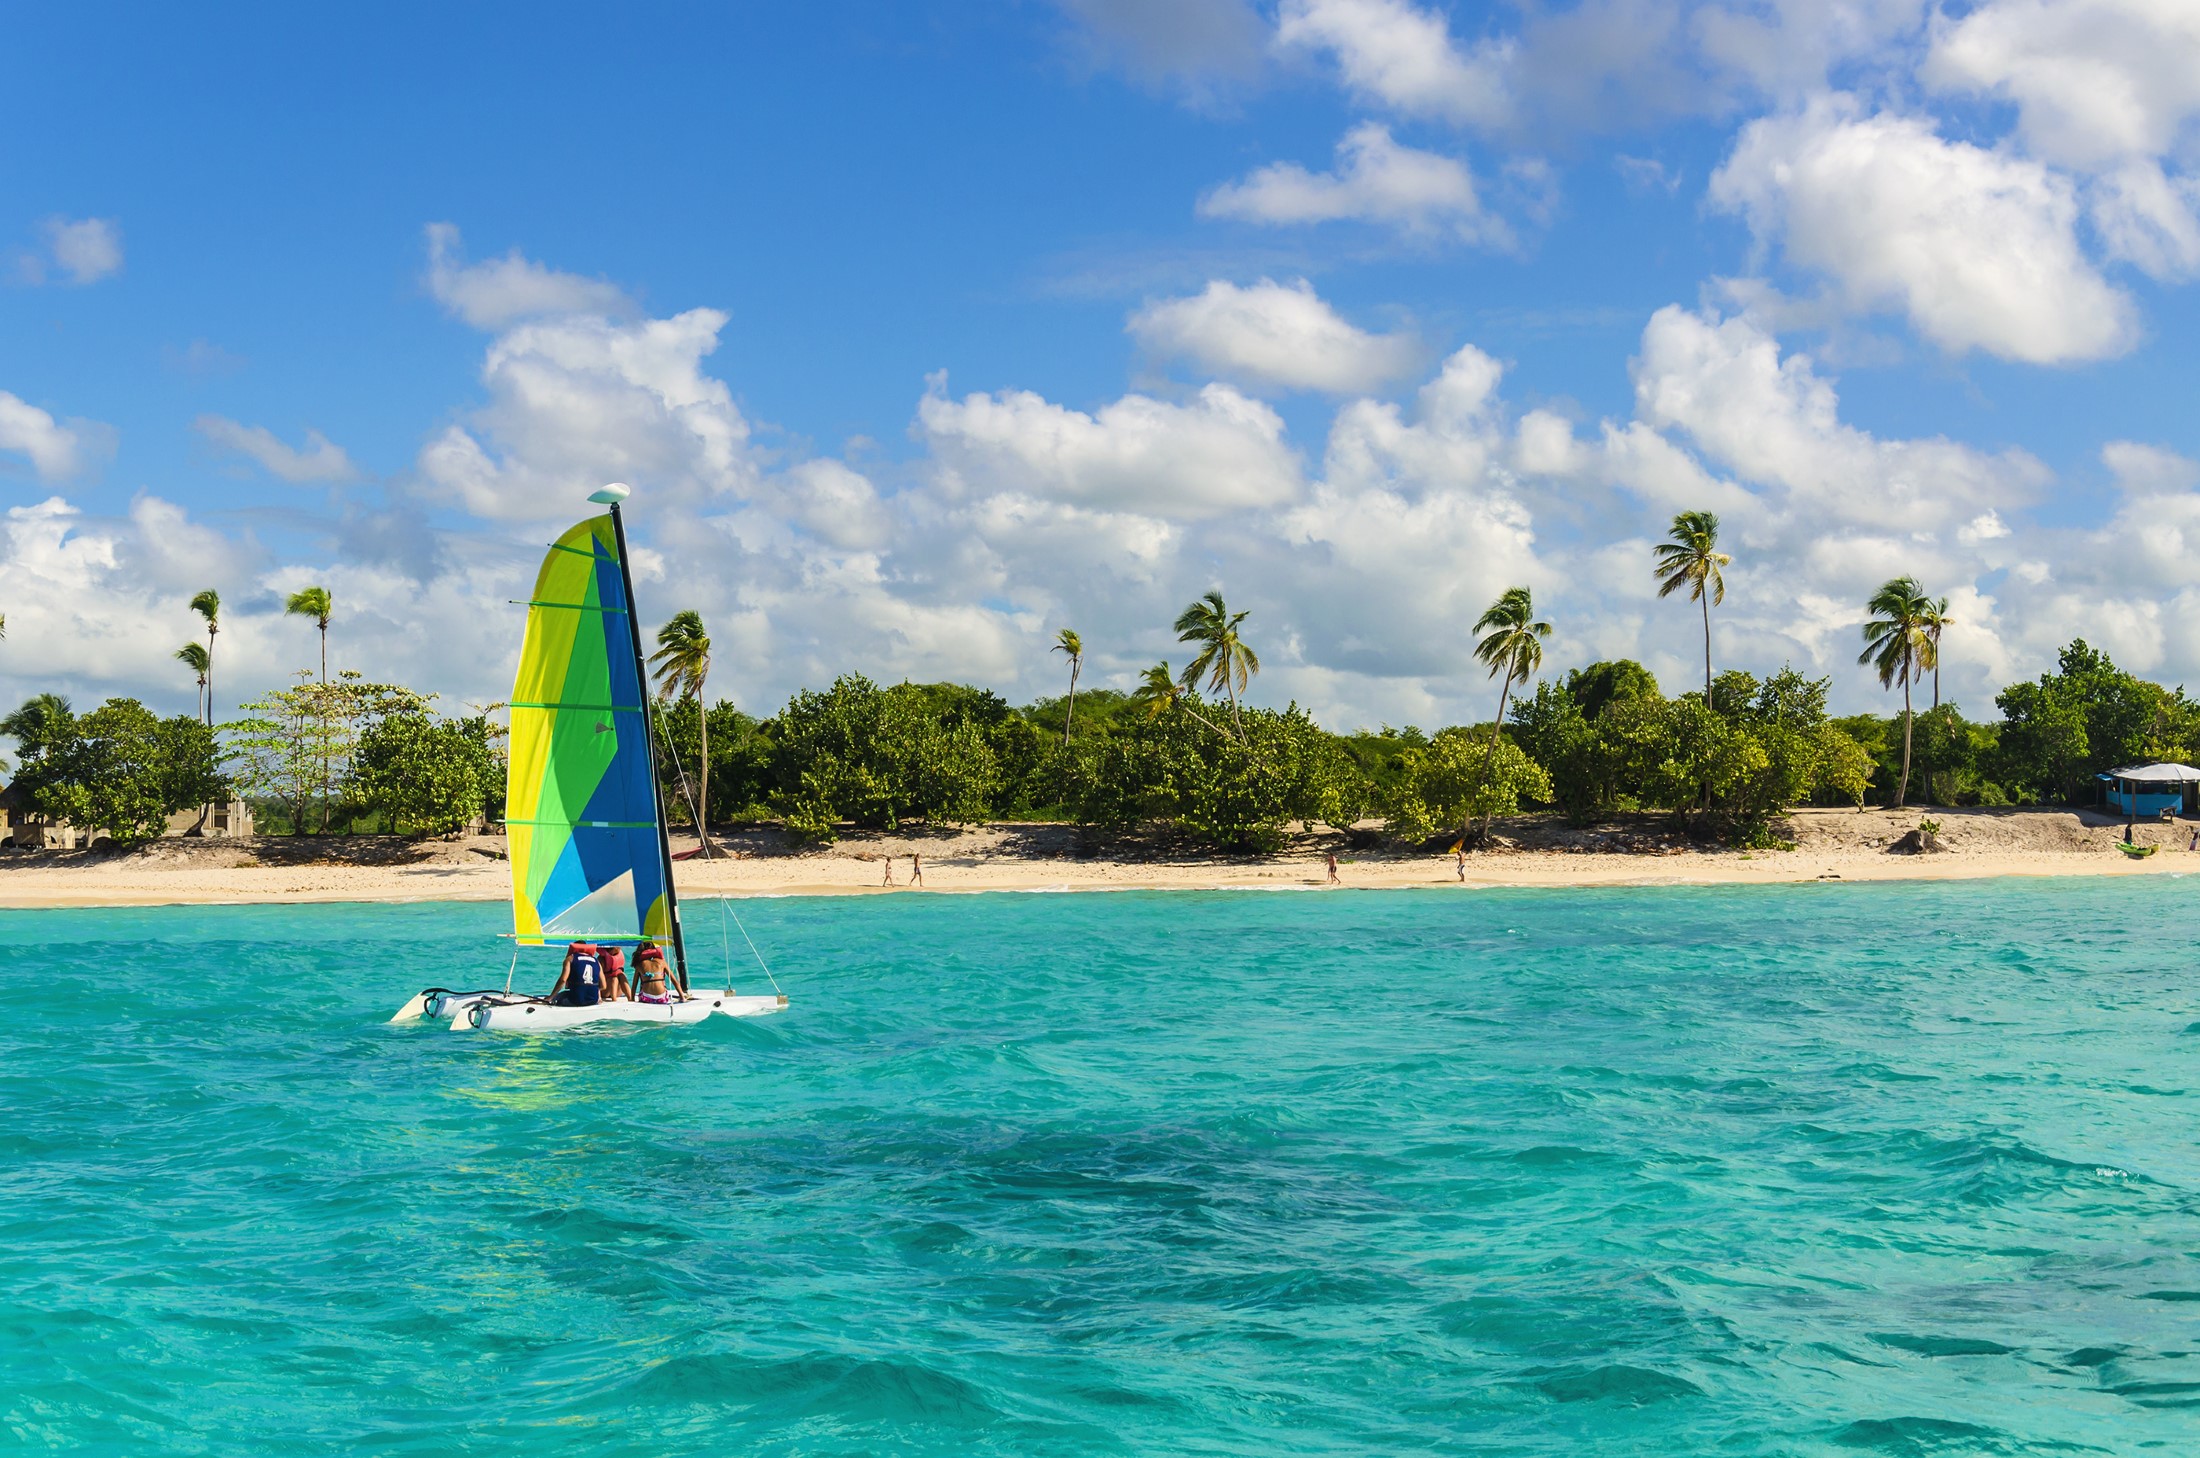 Kolorowy katamaran na lazurowej wodzie na tle błękitnego nieba i egzotycznych palm, Wyspy Karaibskie